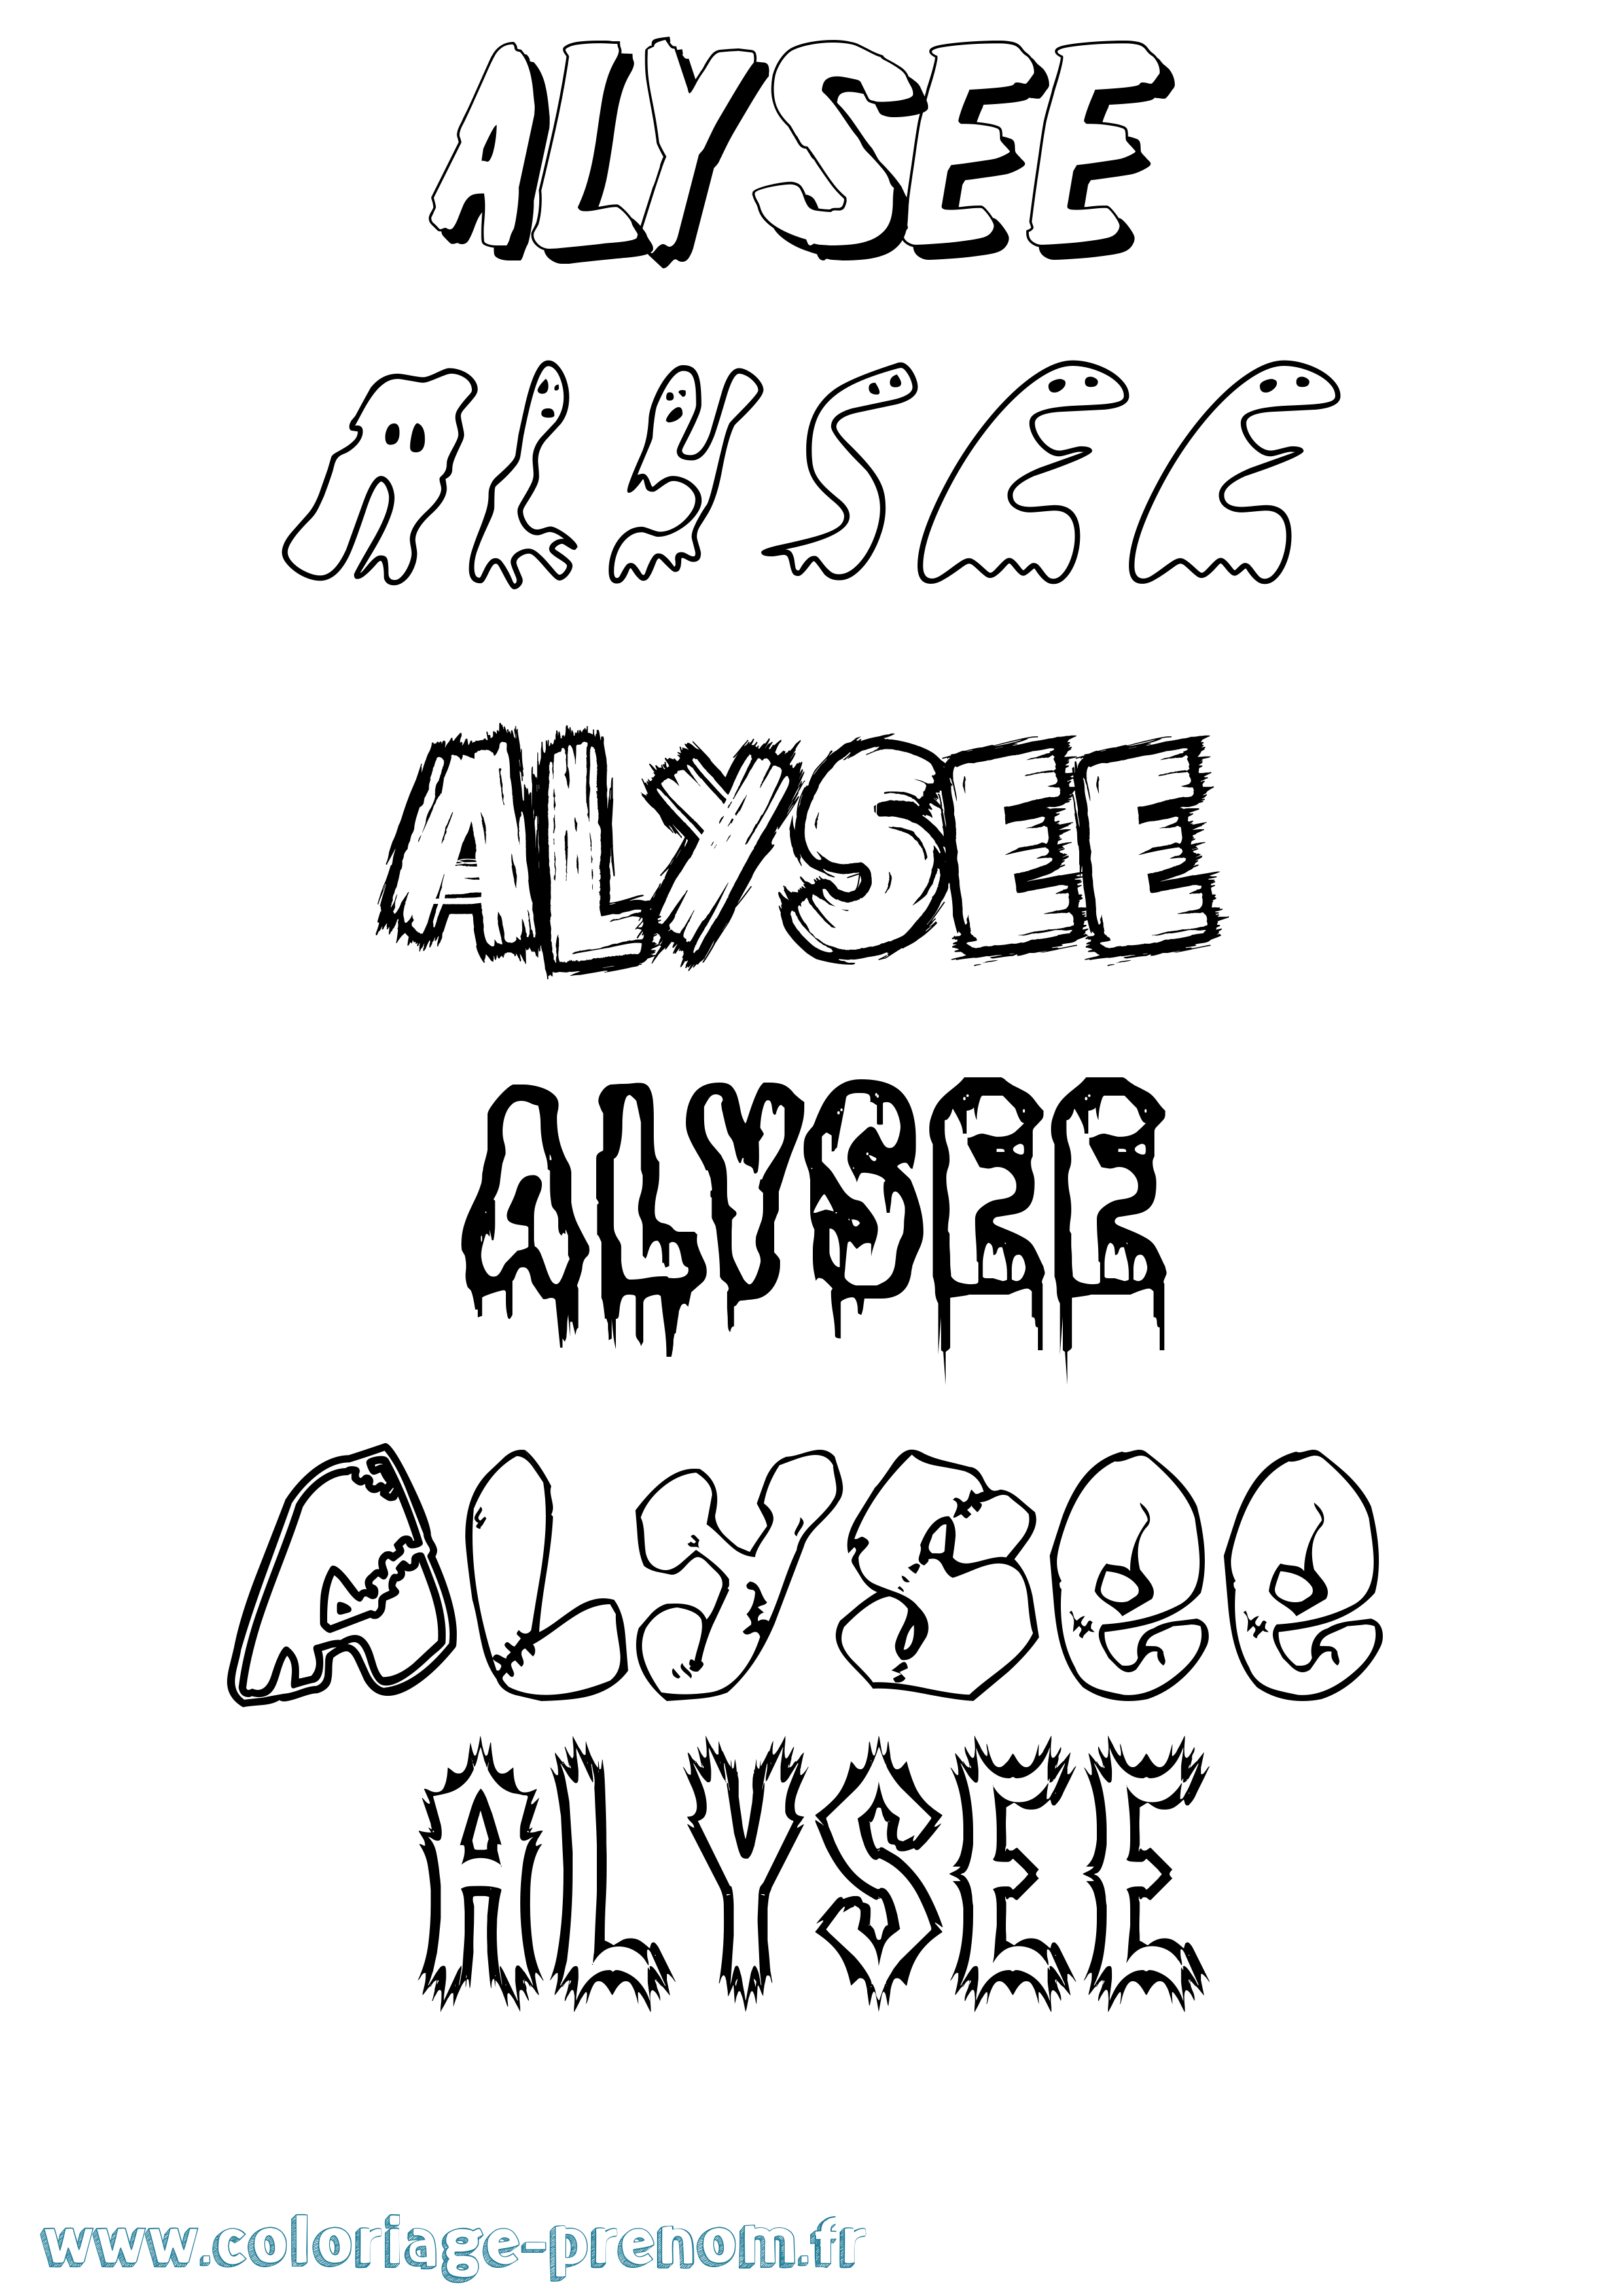 Coloriage prénom Alysee Frisson